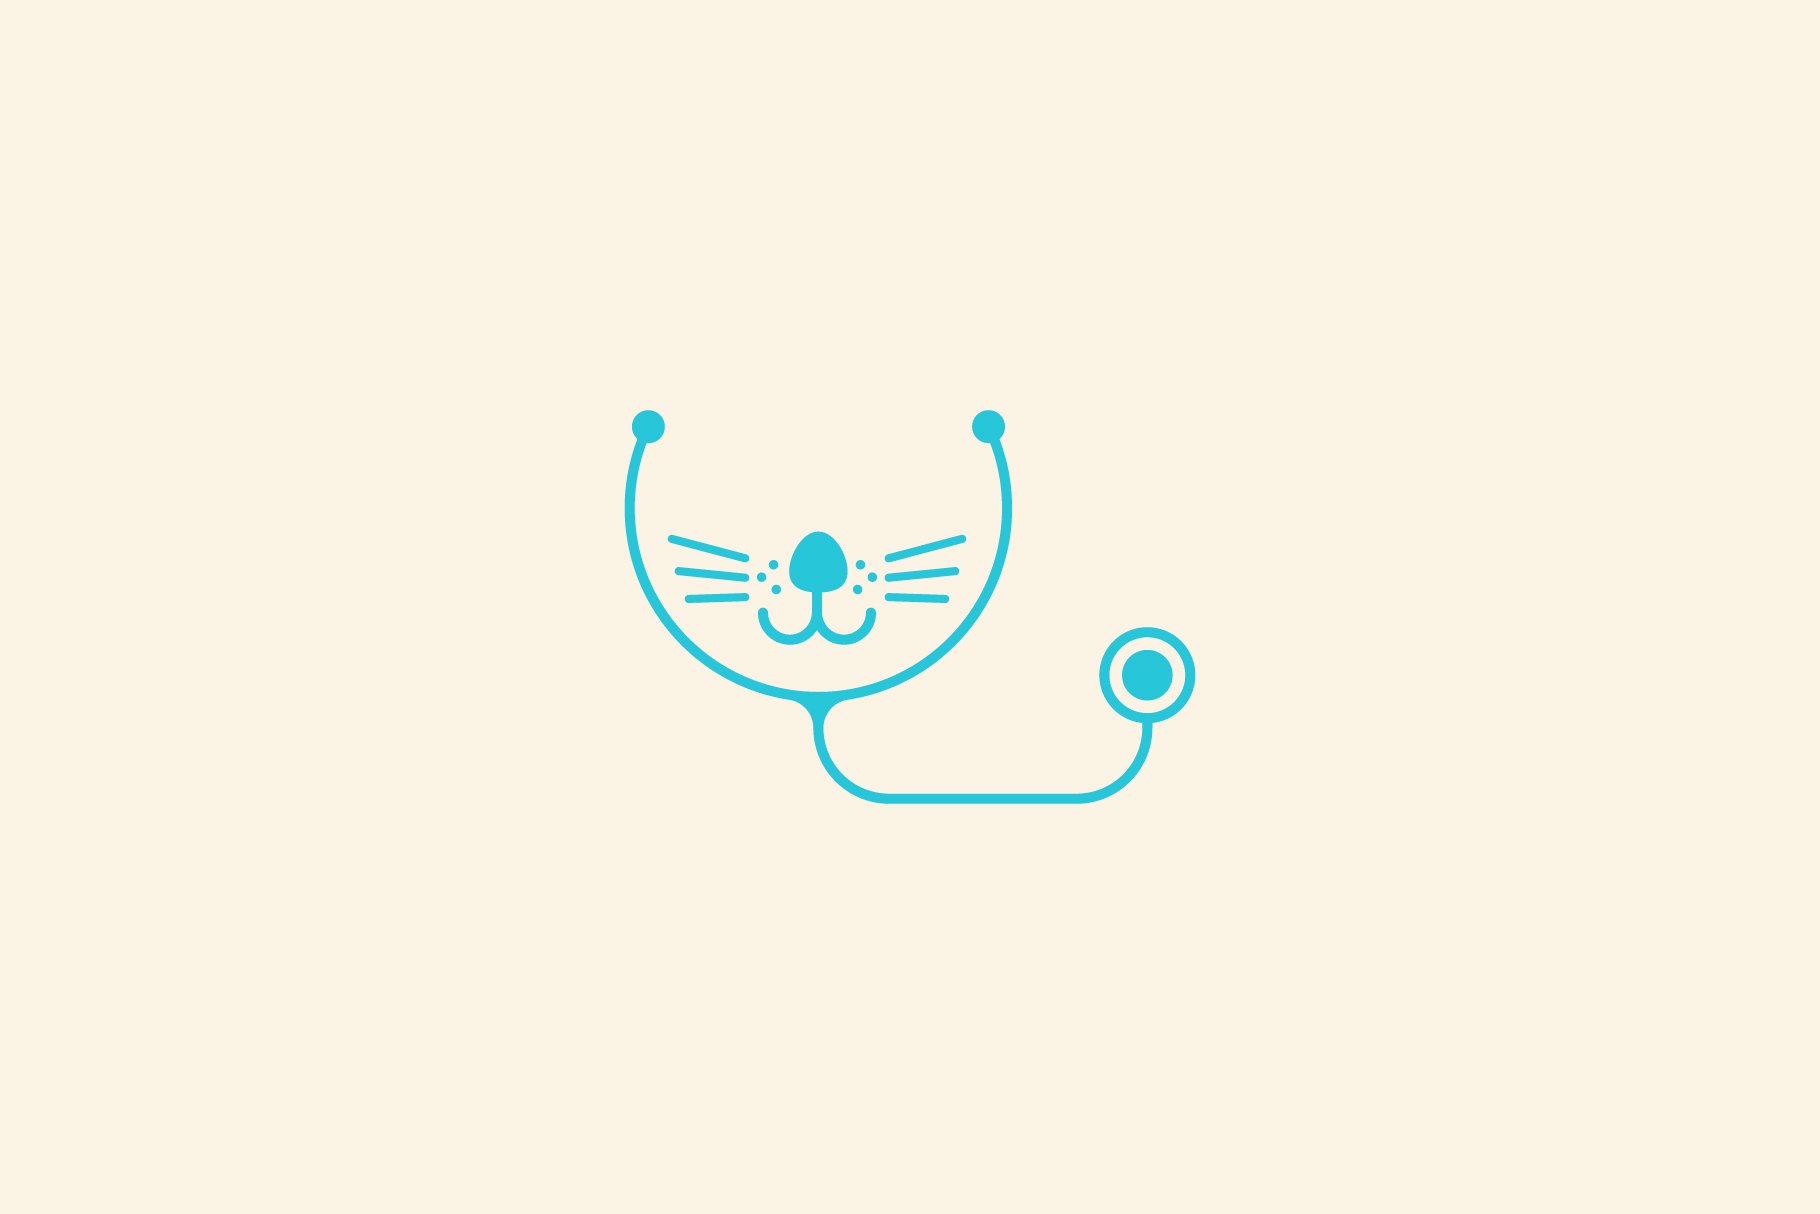 pet dog medical logo design vector cover image.